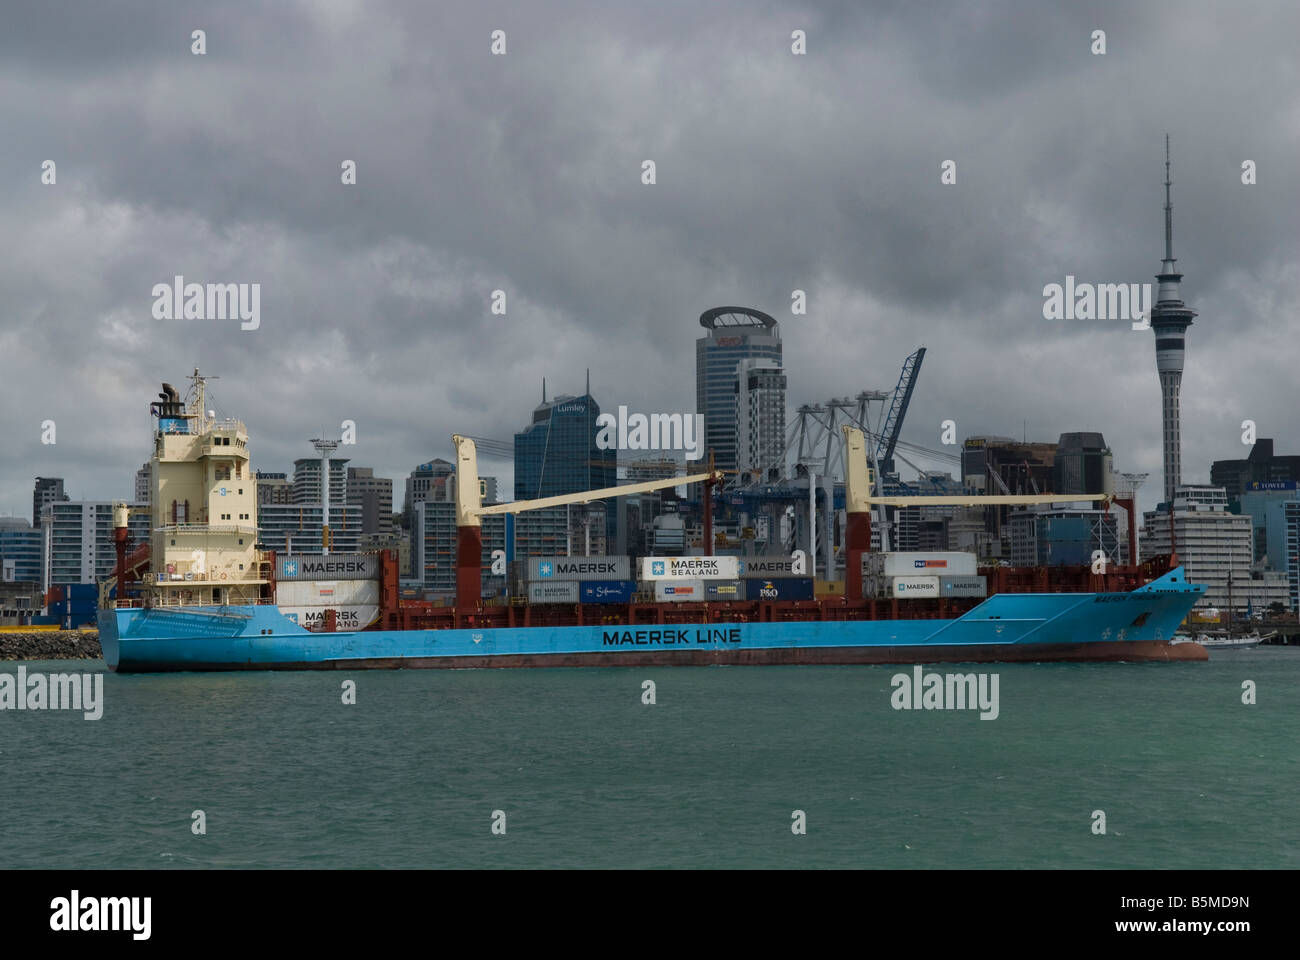 Le Maersk Fukuoka, un porte-conteneurs, dans le port d'Auckland, île du Nord, en Nouvelle-Zélande. Les conteneurs des navires entre la Nouvelle-Zélande et les îles du Pacifique. Banque D'Images